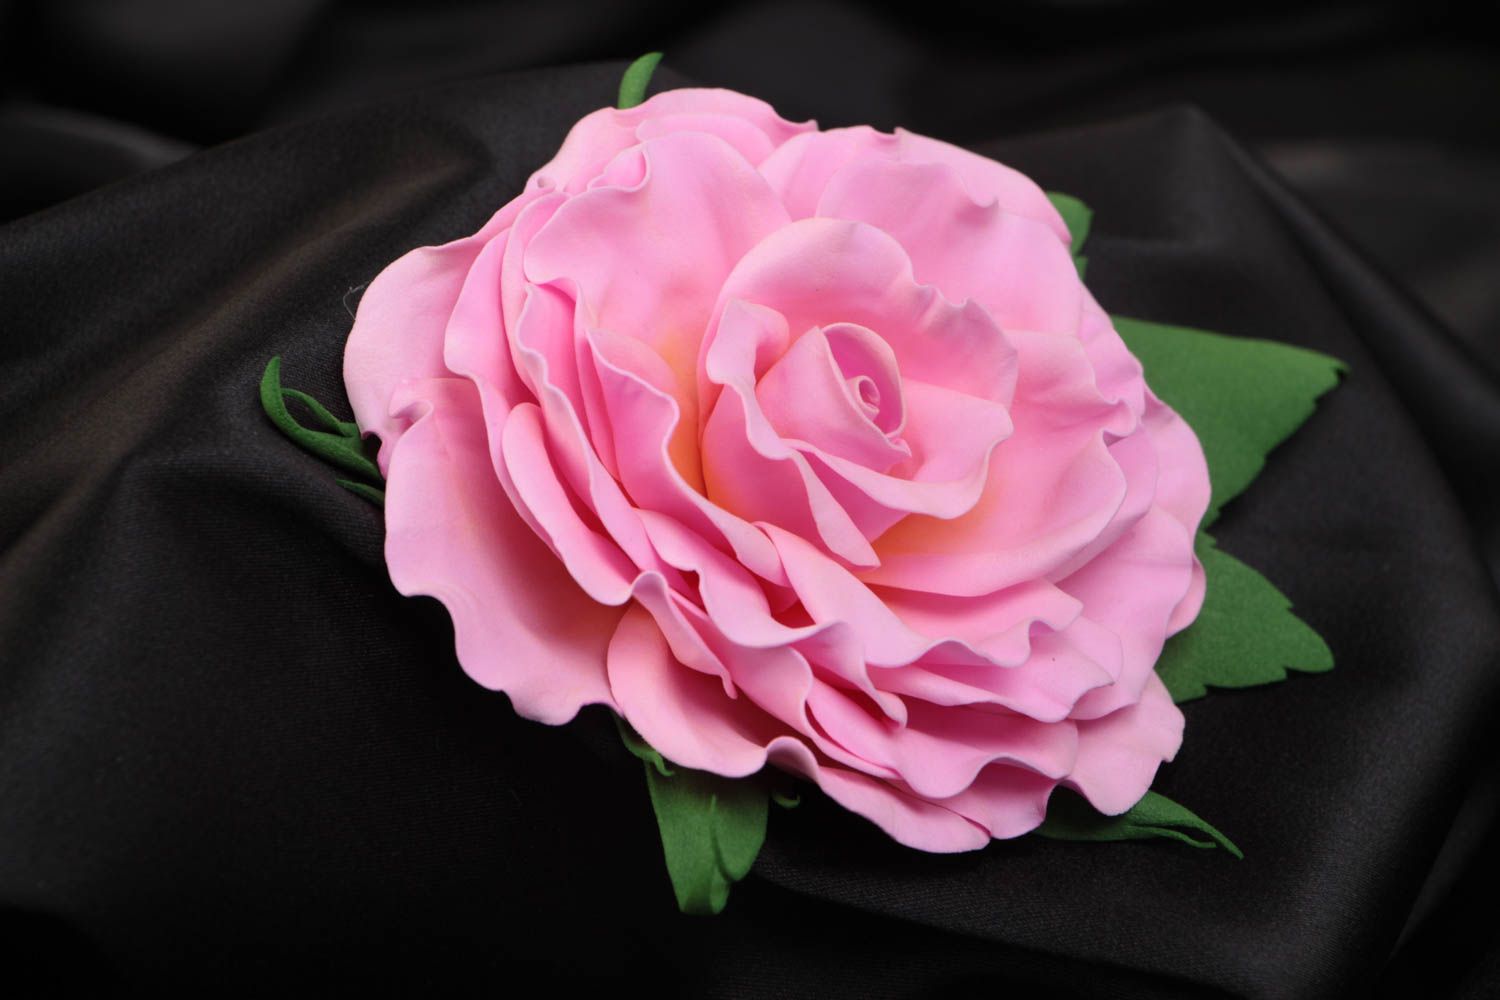 Брошь из фоамирана в виде пышной розовой розы украшение ручной работы  фото 1